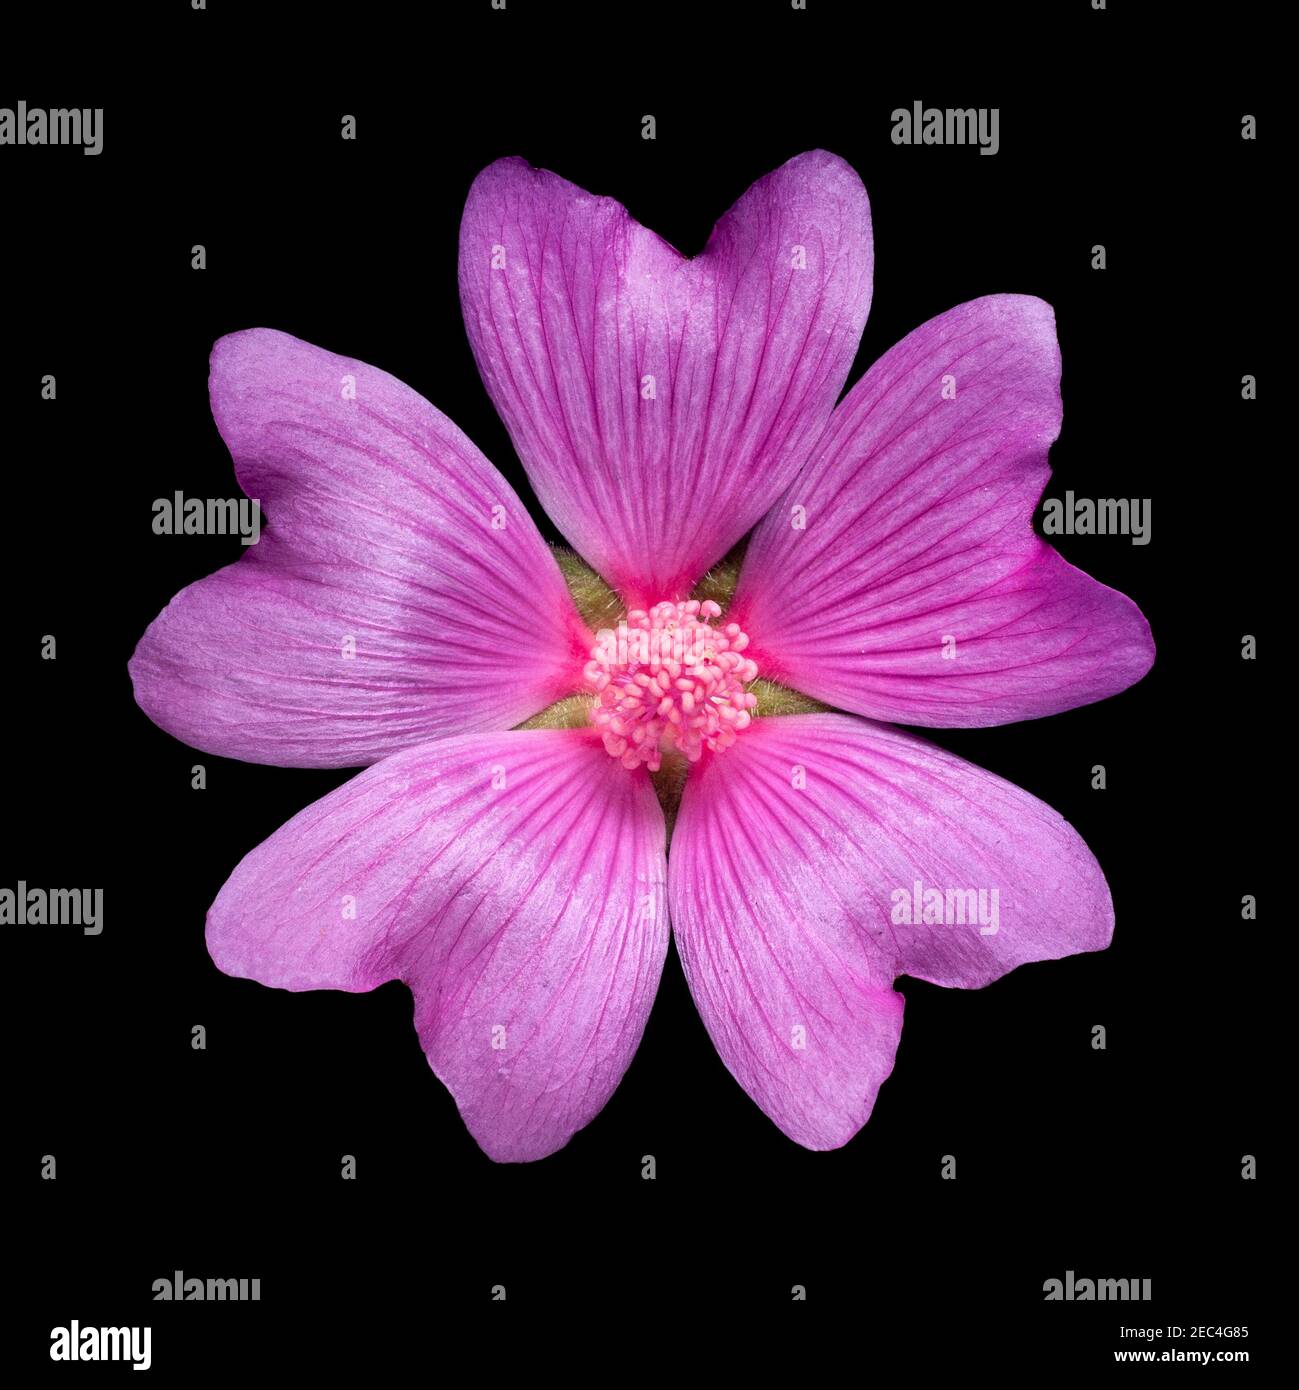 Gemeine Malvenblume, Malva sylvestris, schwarzer Hintergrund Ausschnitt Stockfoto